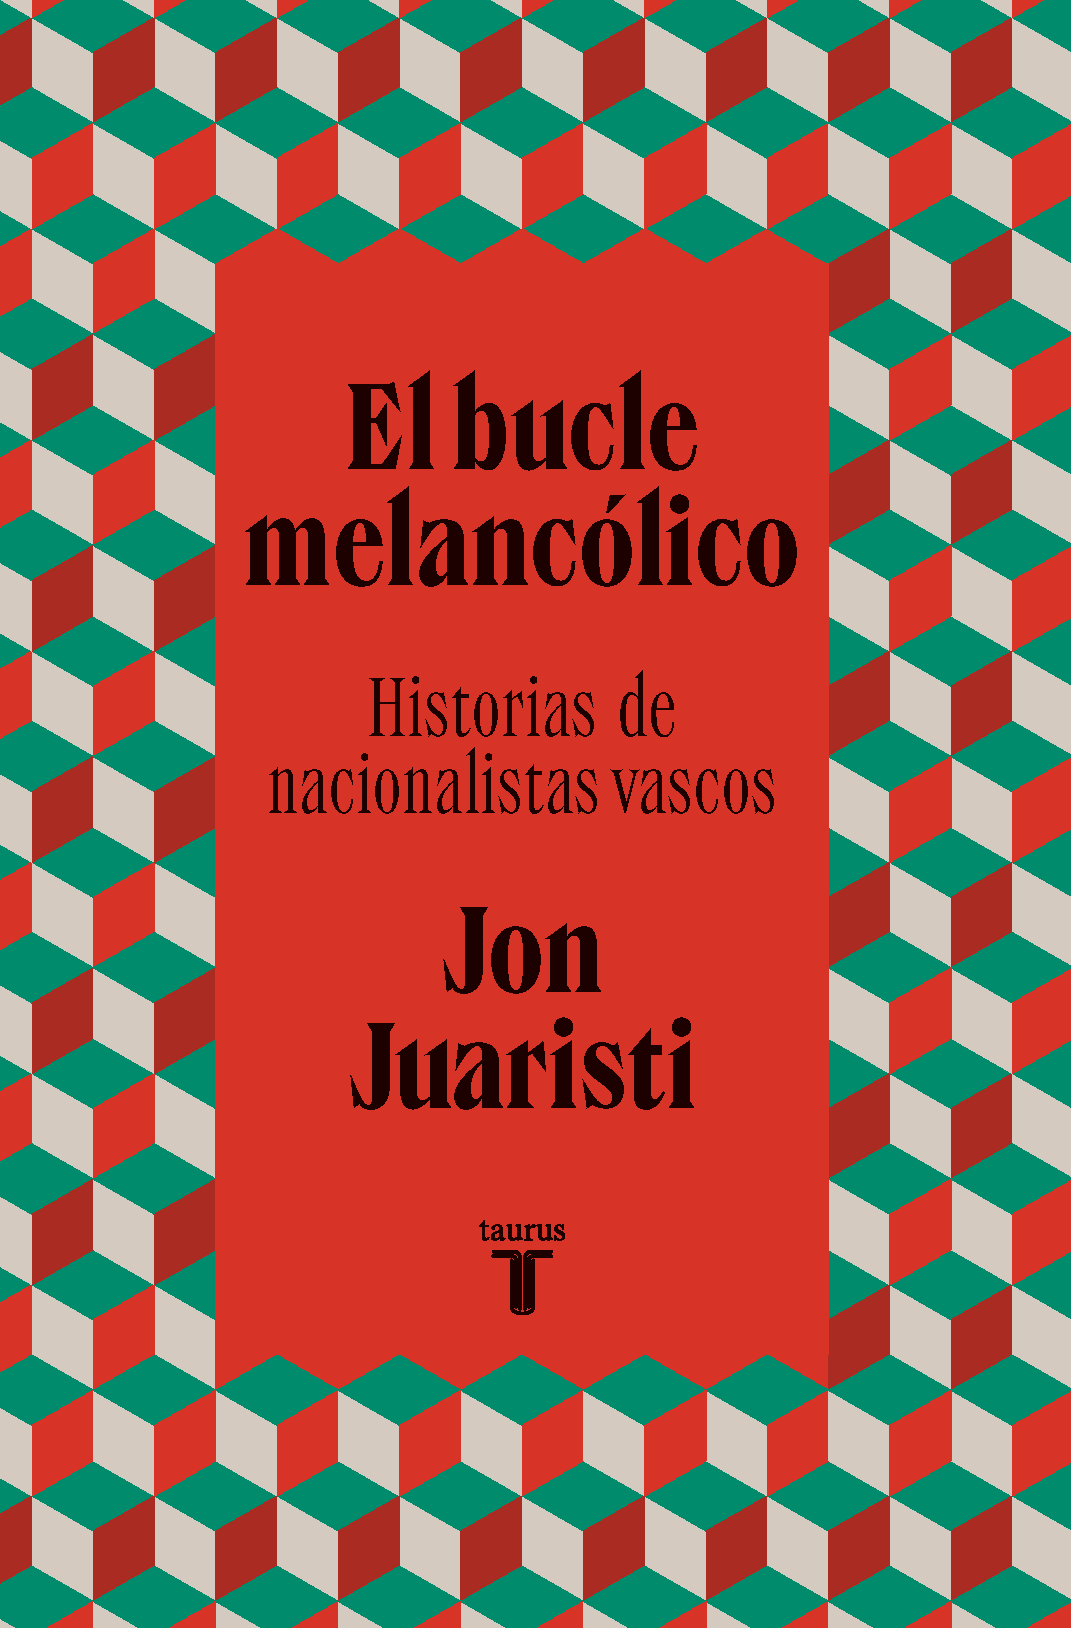 El bucle melancólico, de Jon Juaristi